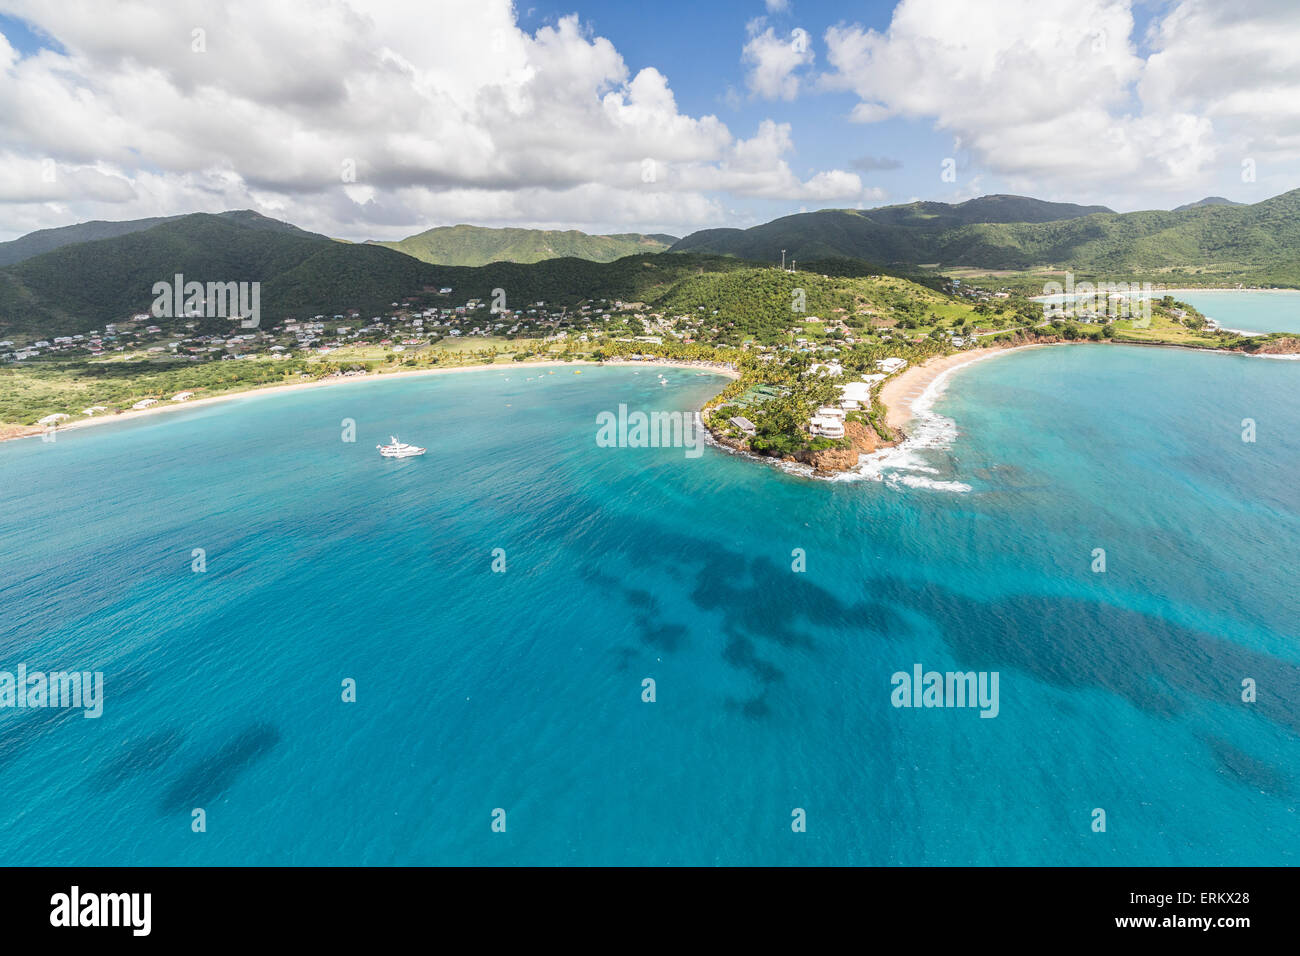 Vue aérienne de la petite péninsule qui abrite près de Carlisle à l'office de tourisme de luxe paradise, des Caraïbes Antigua Banque D'Images